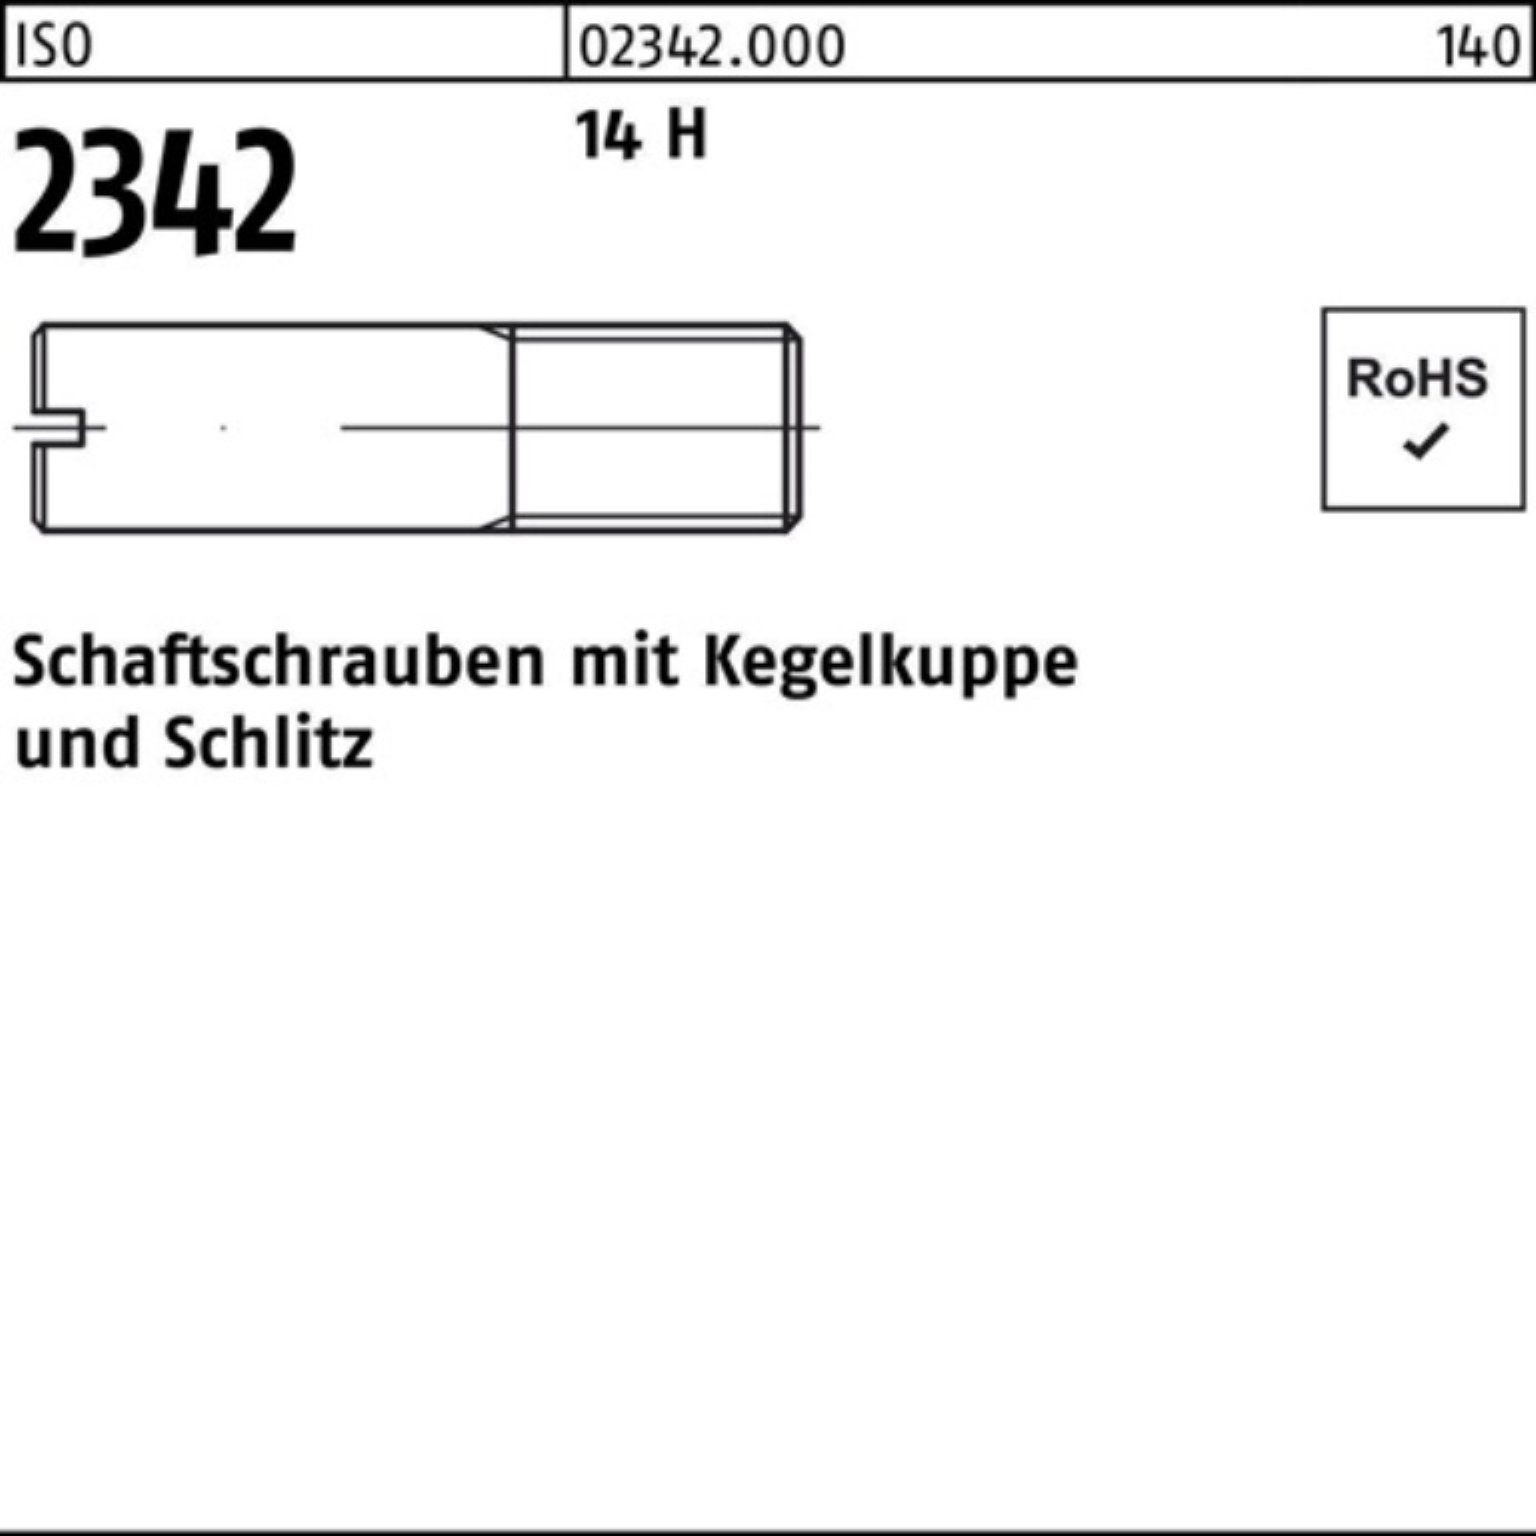 Reyher Schraube 100er Pack Schaftschraube ISO 2342 Kegelkuppe/Schlitz M4x 10 14 H 100